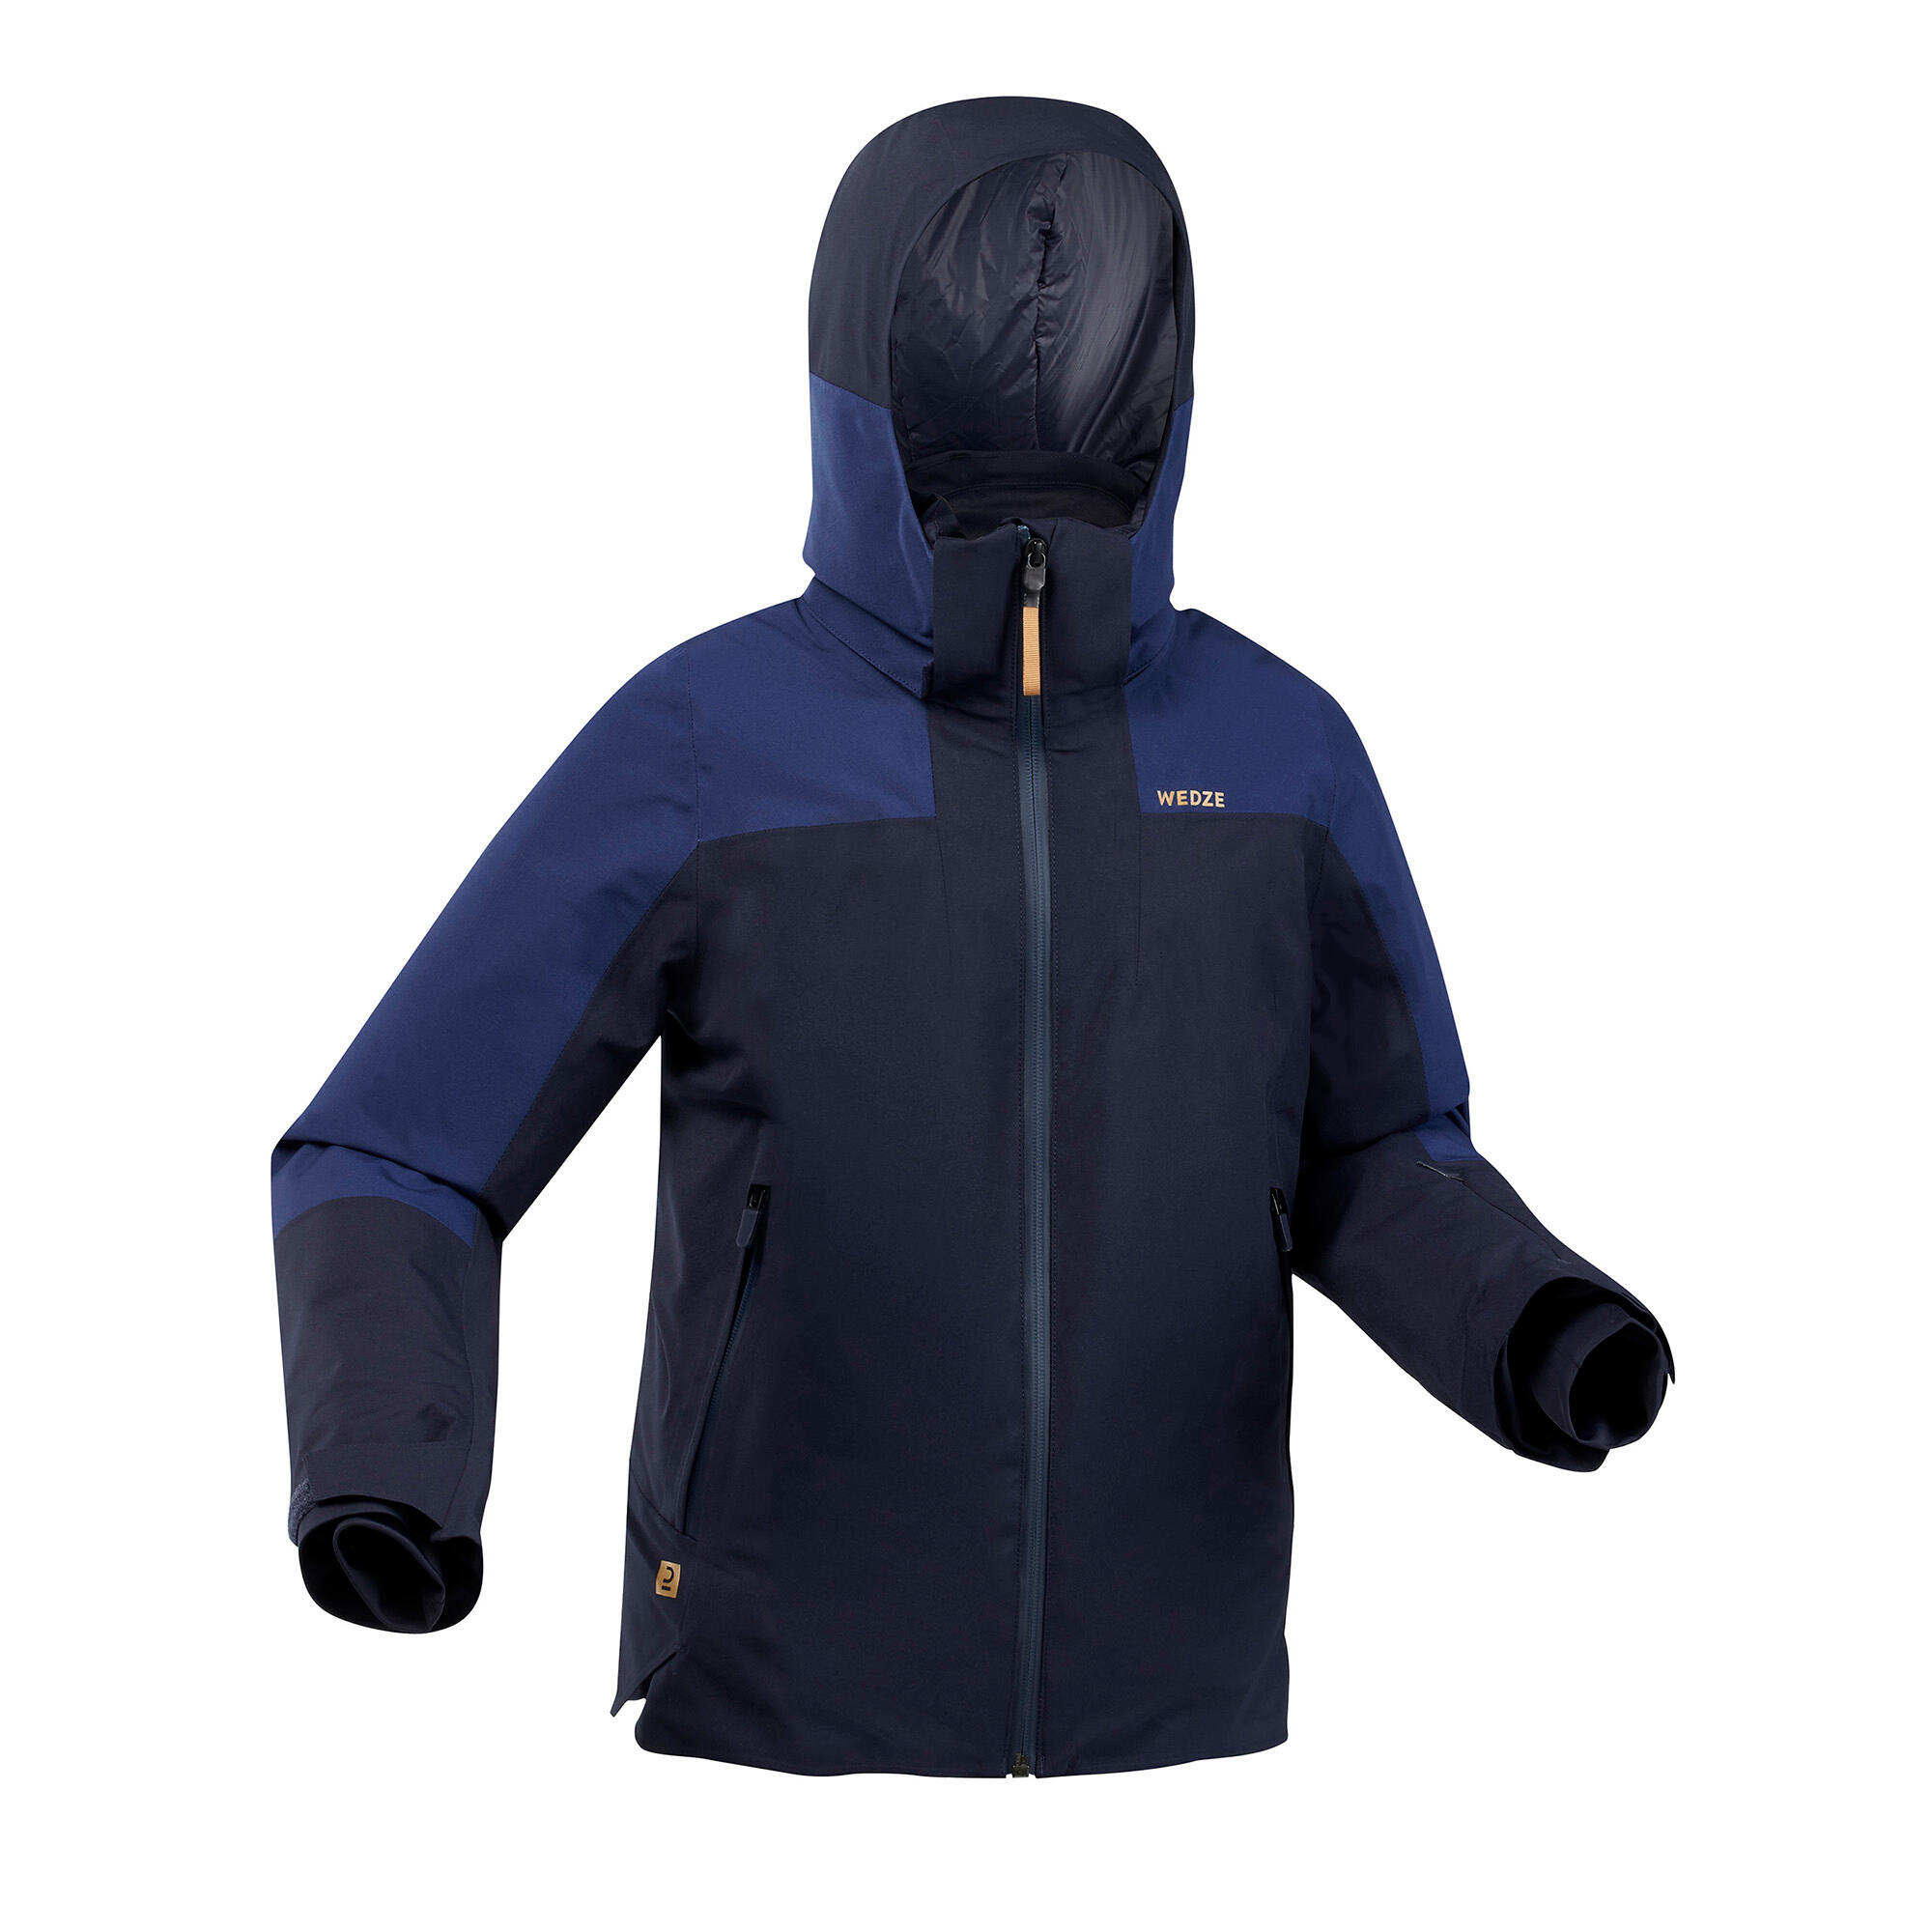 Kids' Snowsuit - Warm 500 Blue - Dark blue, Blue, Blue - Wedze - Decathlon